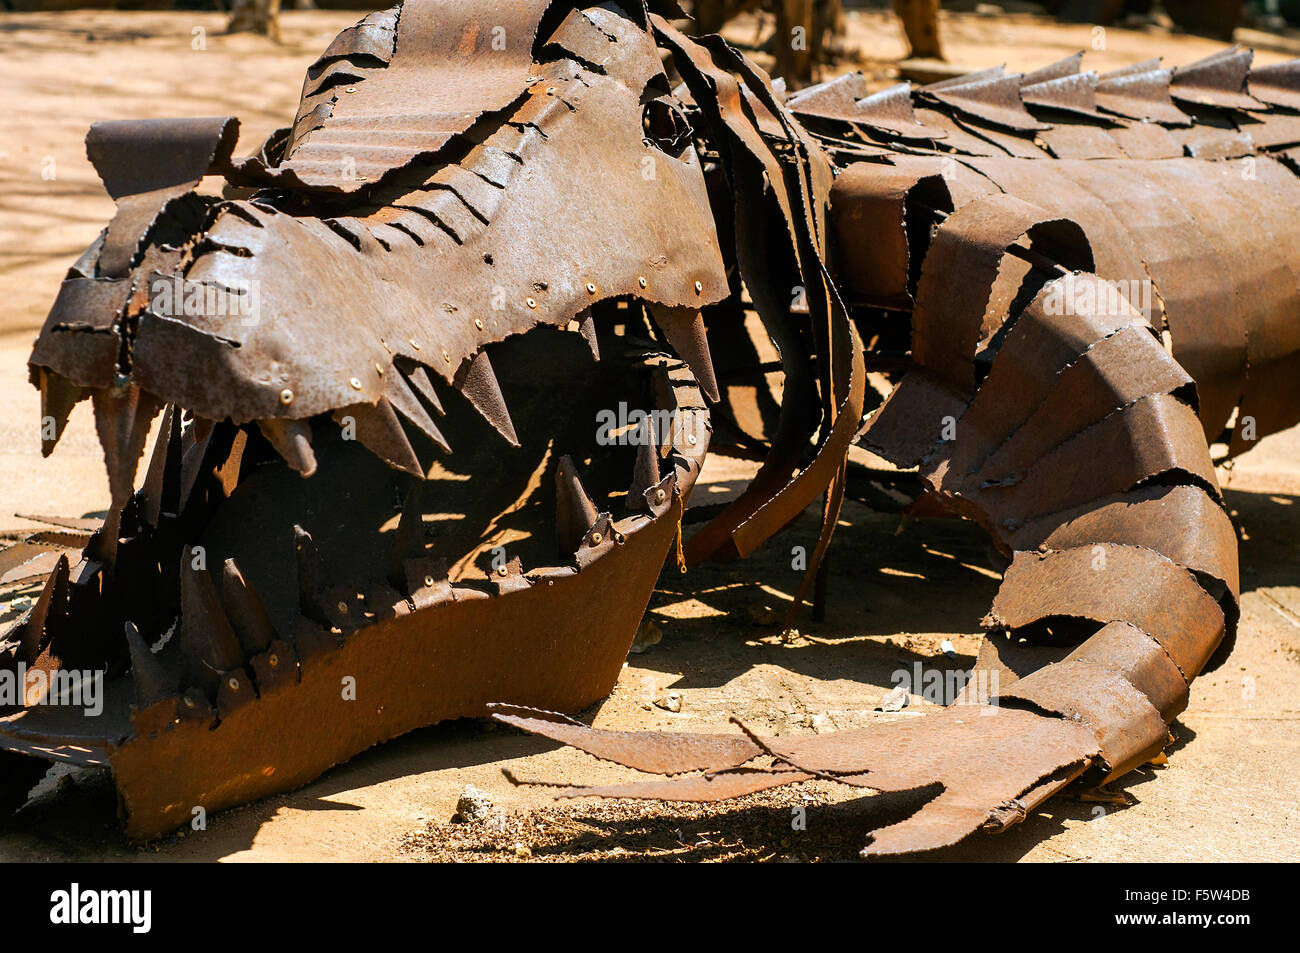 Musée national de l'extérieur de sculptures de crocodiles, Gaborone, Botswana Banque D'Images